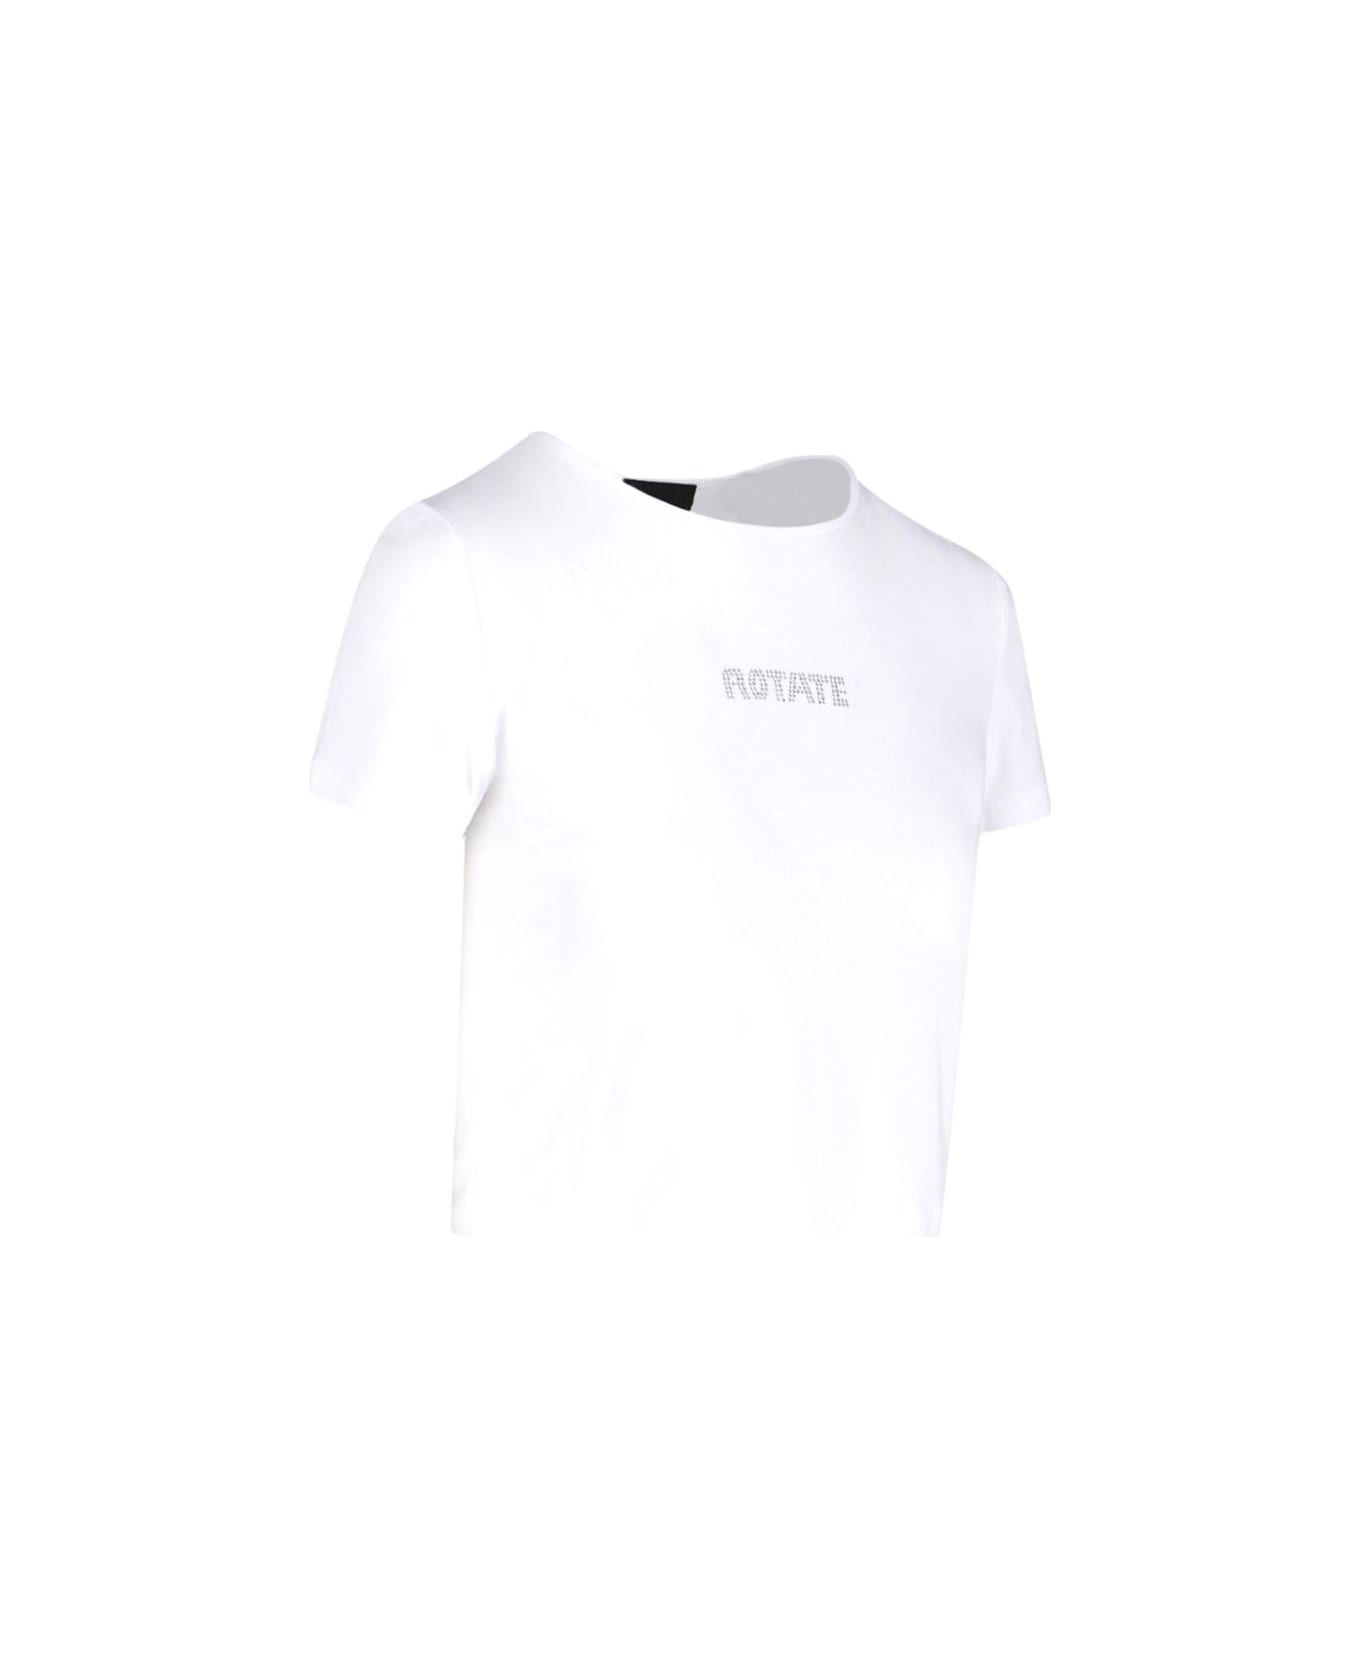 Rotate by Birger Christensen Logo Crop T-shirt - Bright white